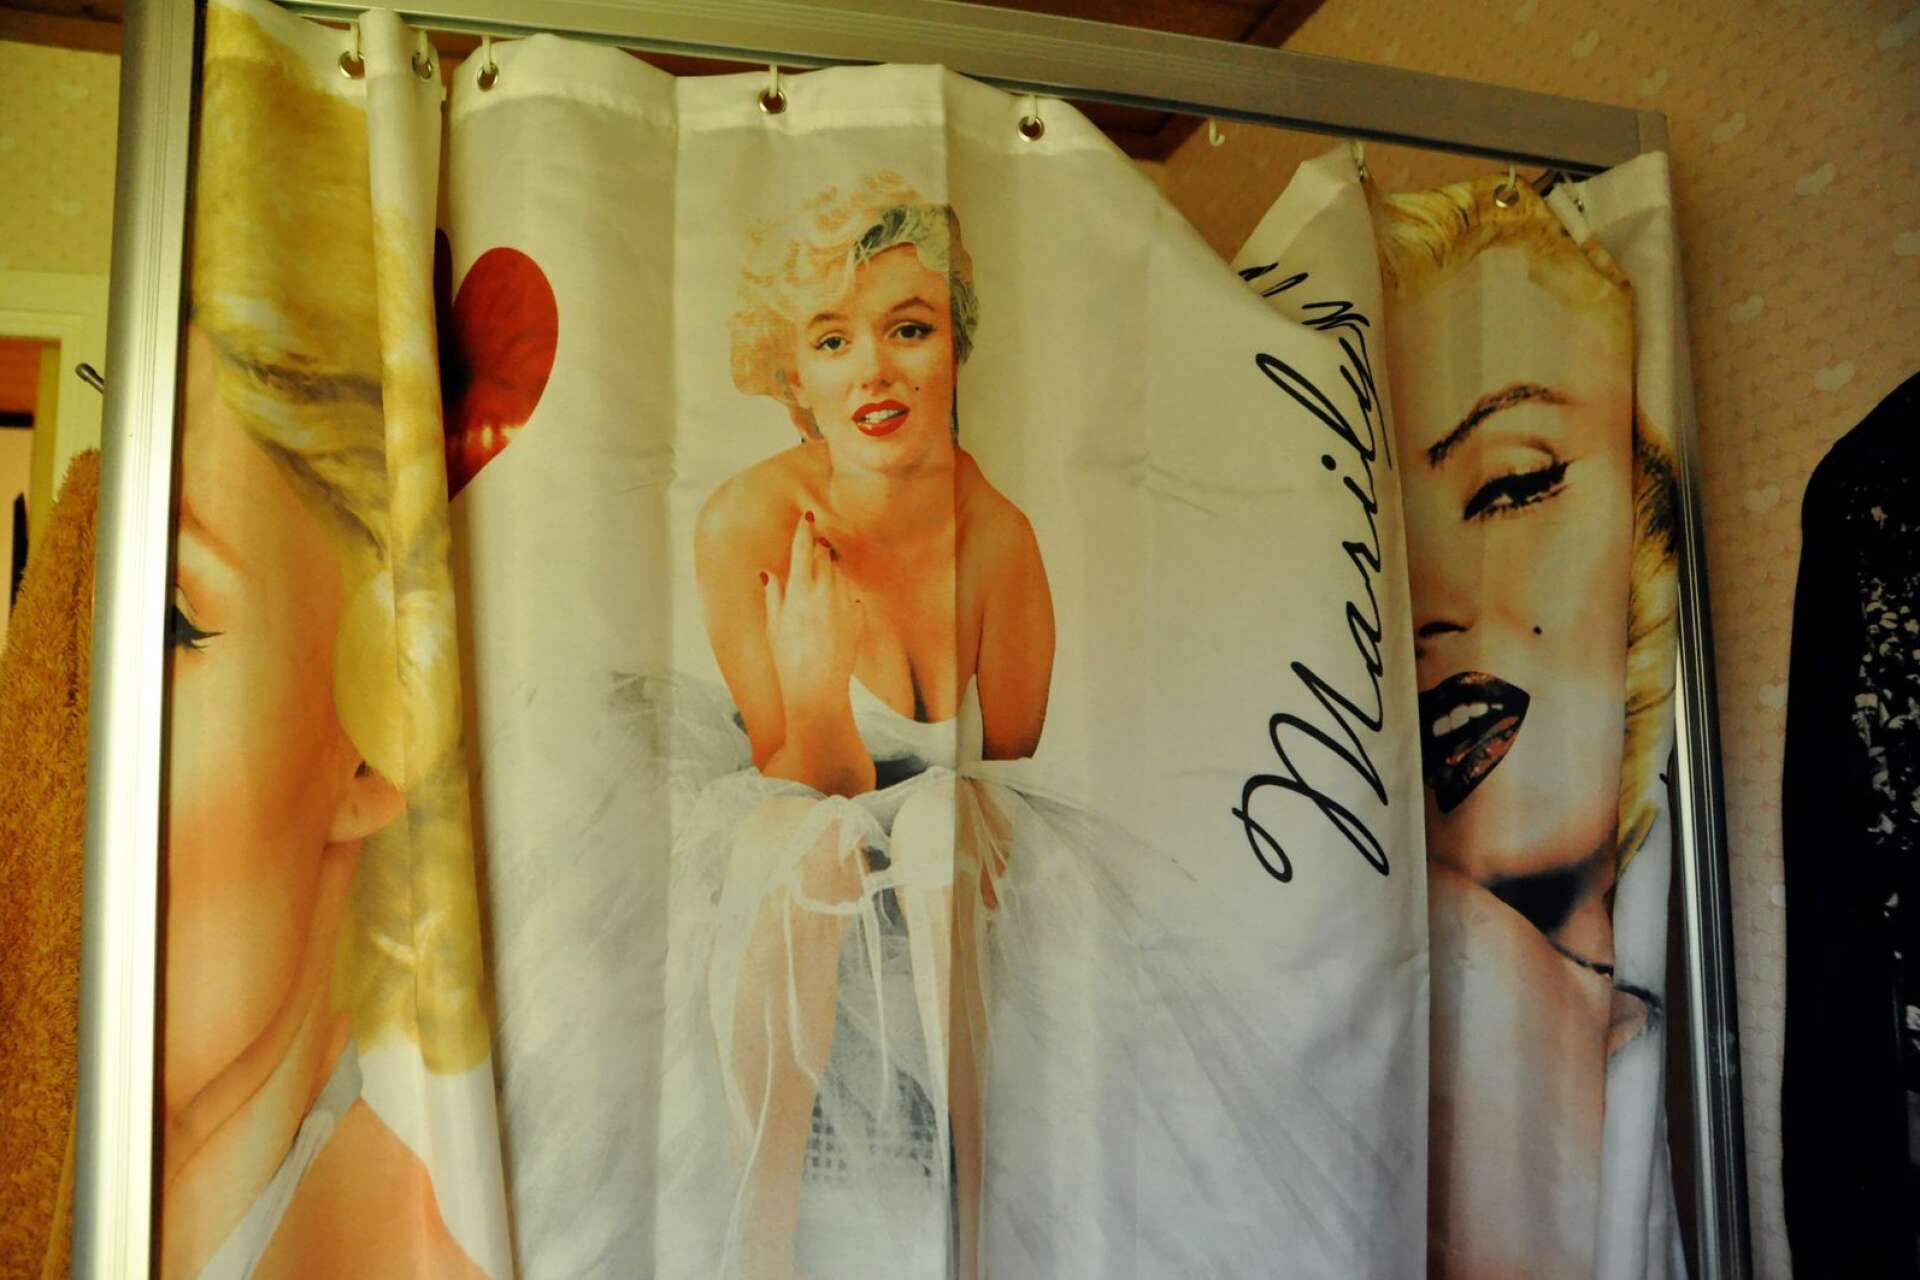 Även i badrummet finns Marilyn såklart med.